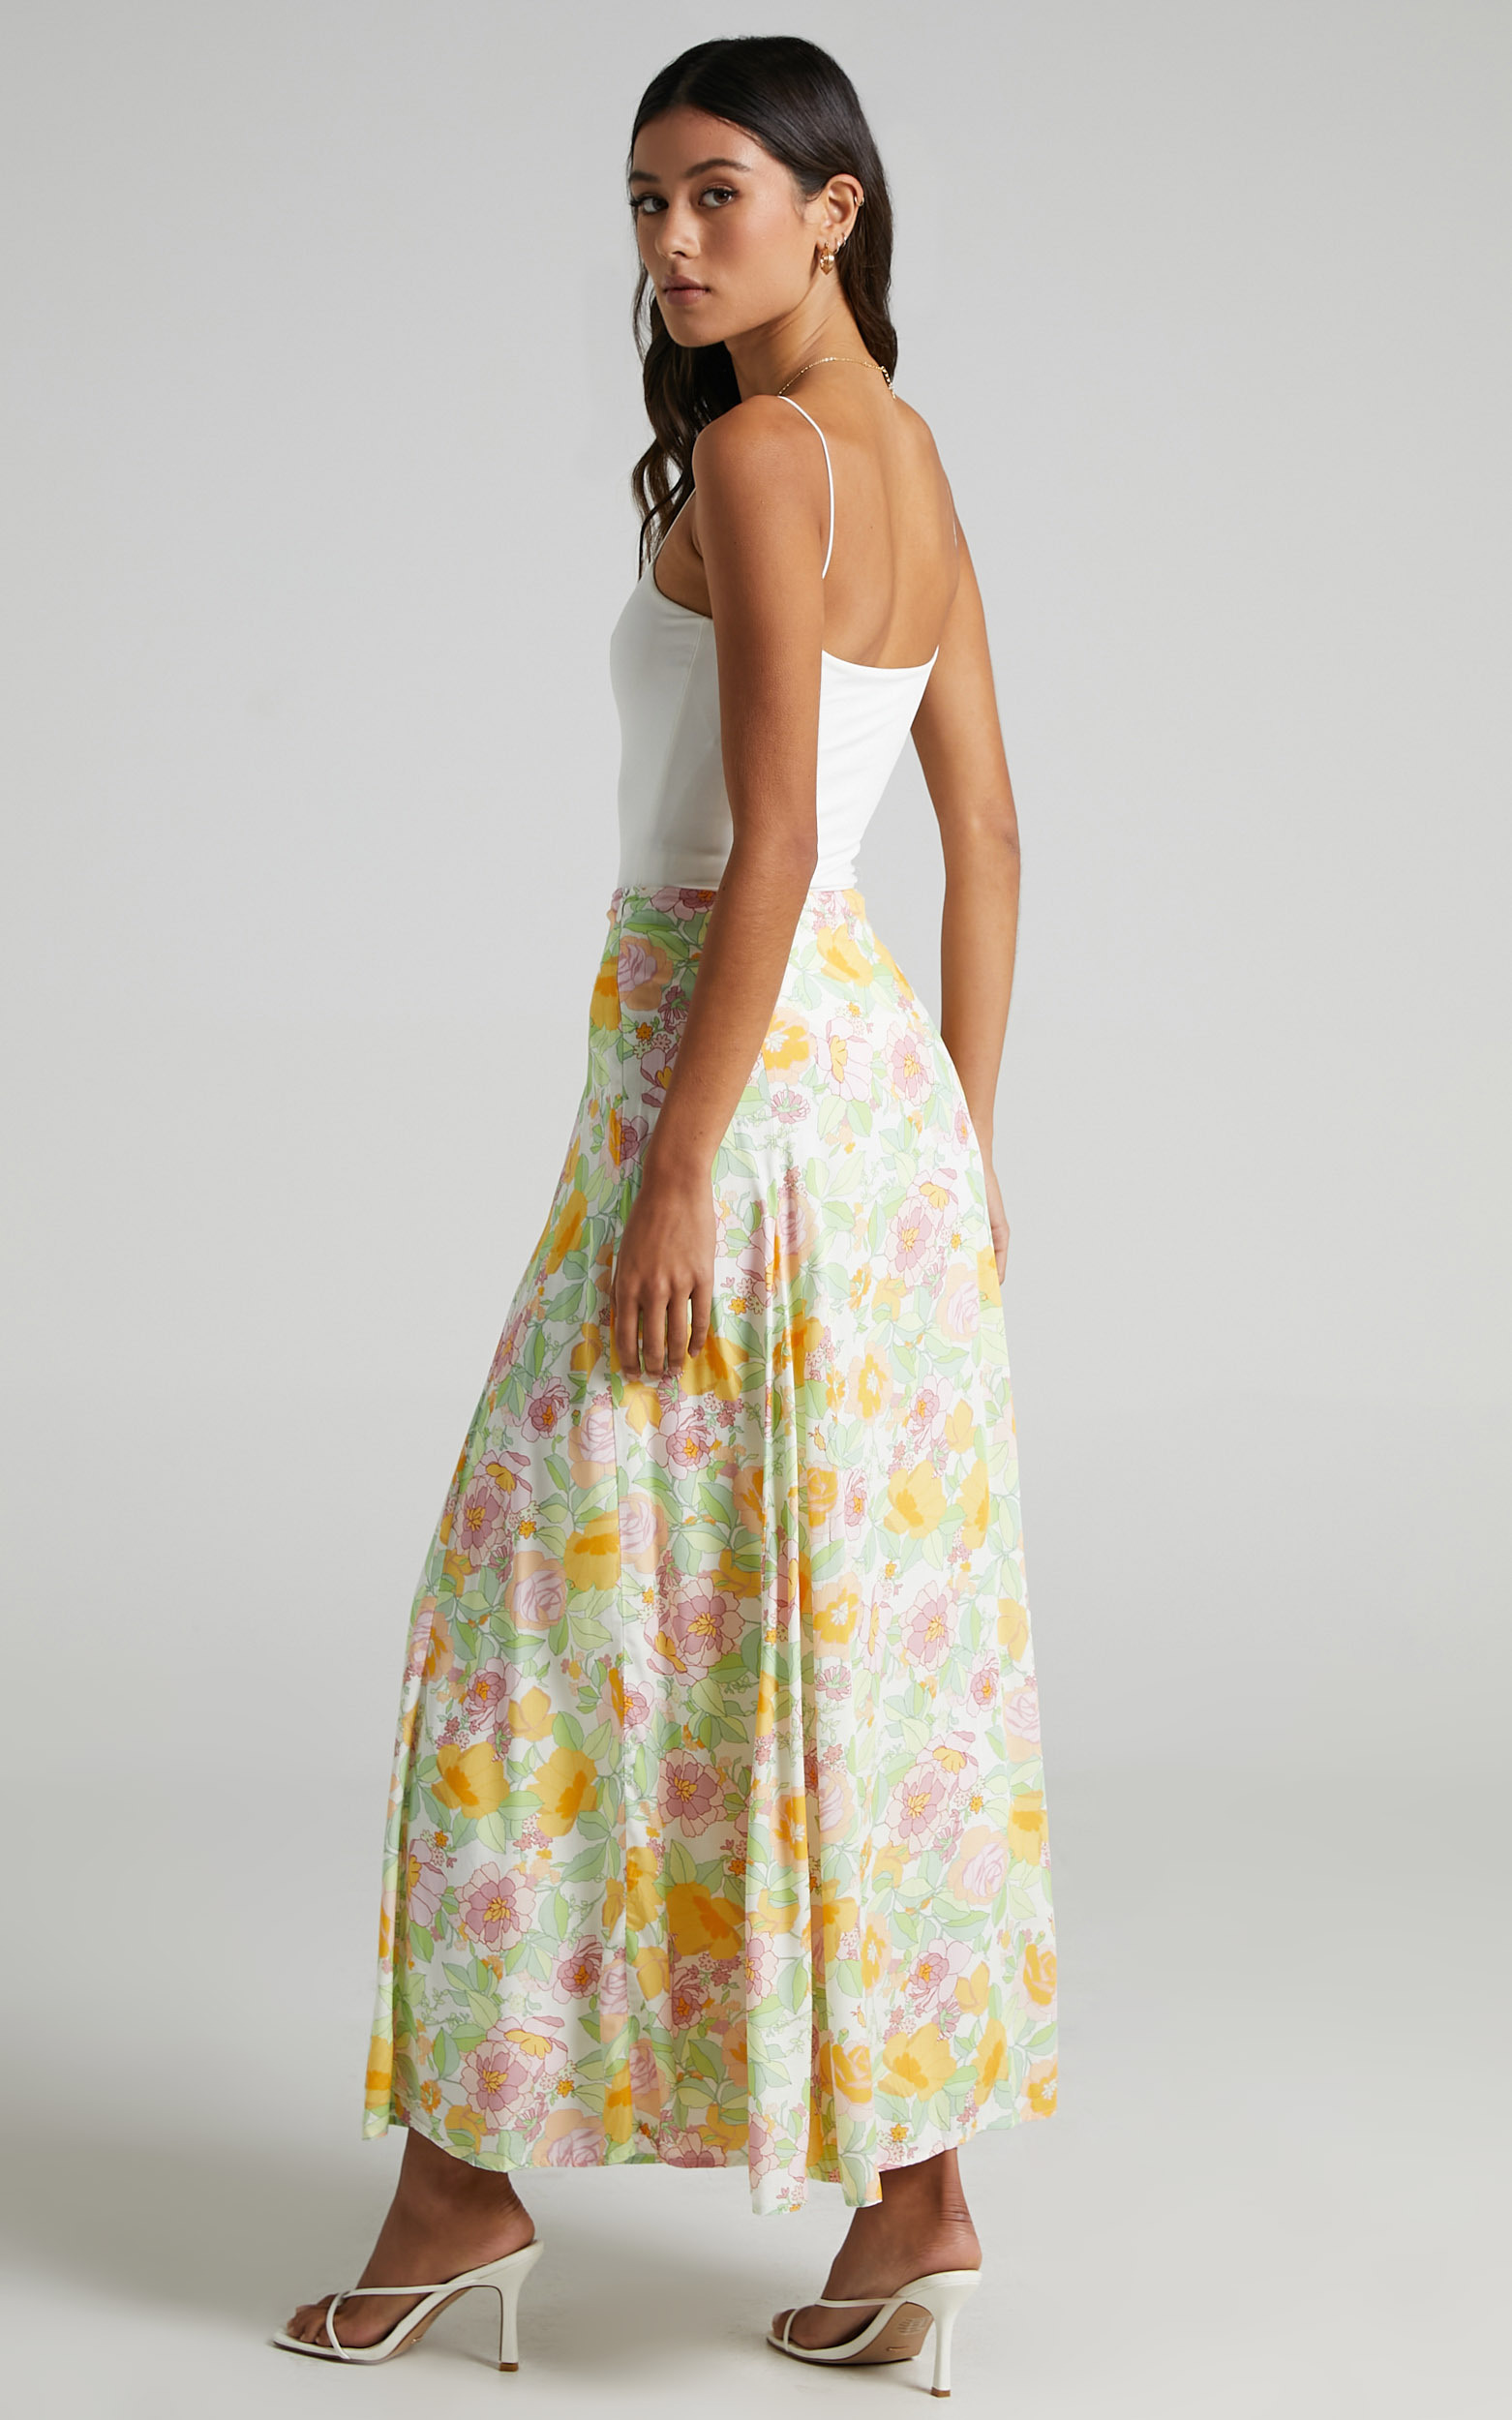 Stephens Skirt in Linear Floral | Showpo